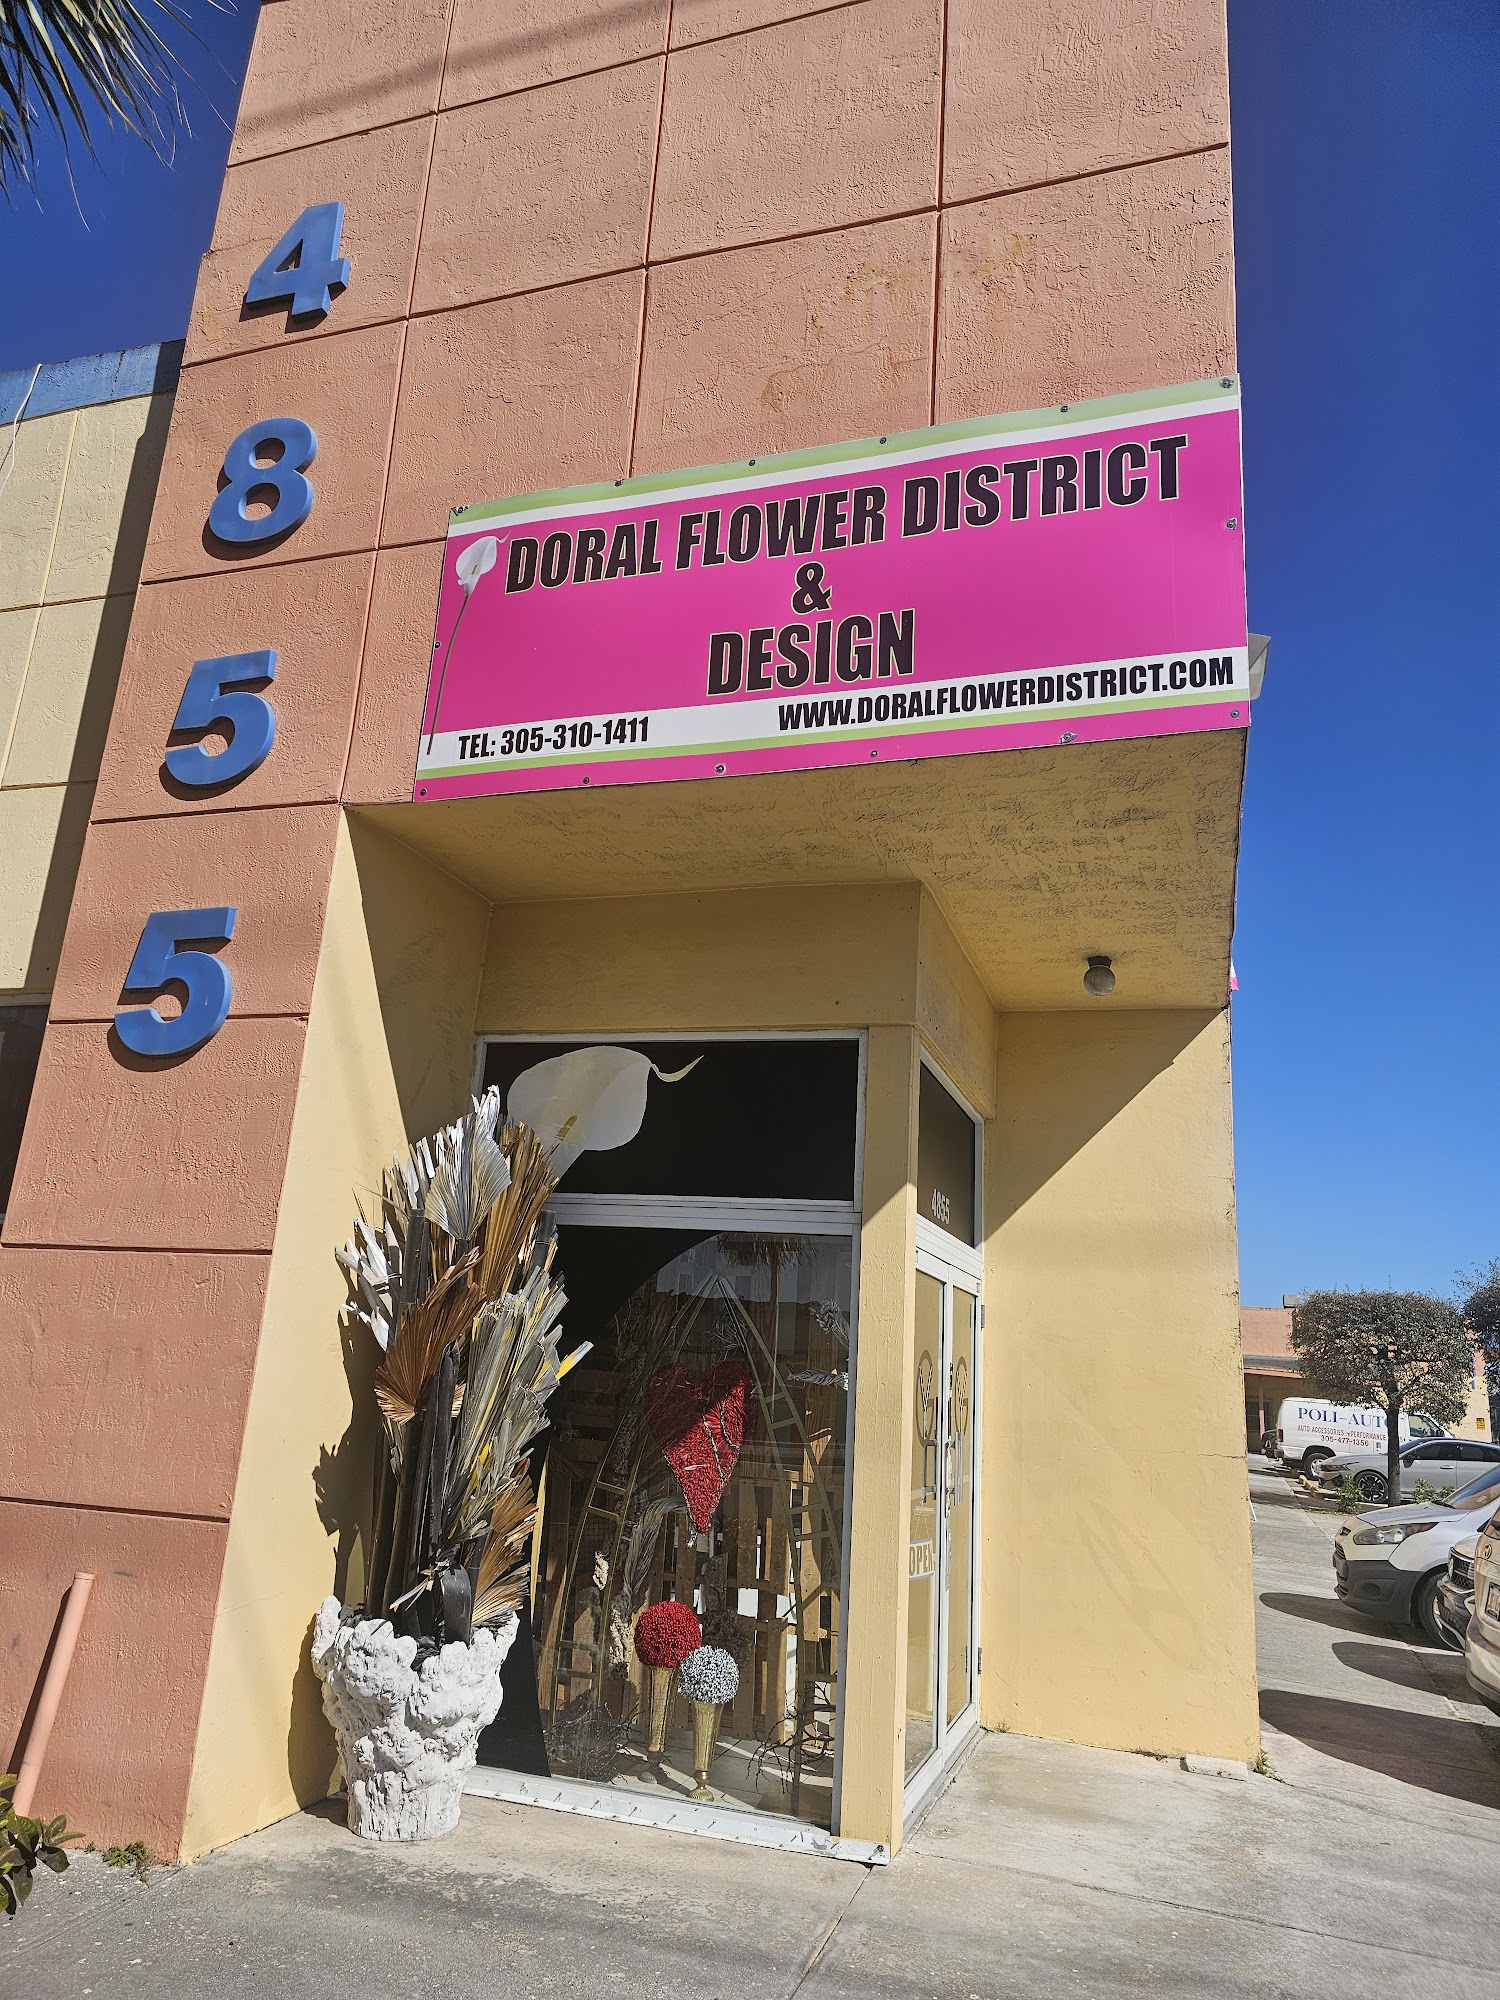 Doral Flower District & Design